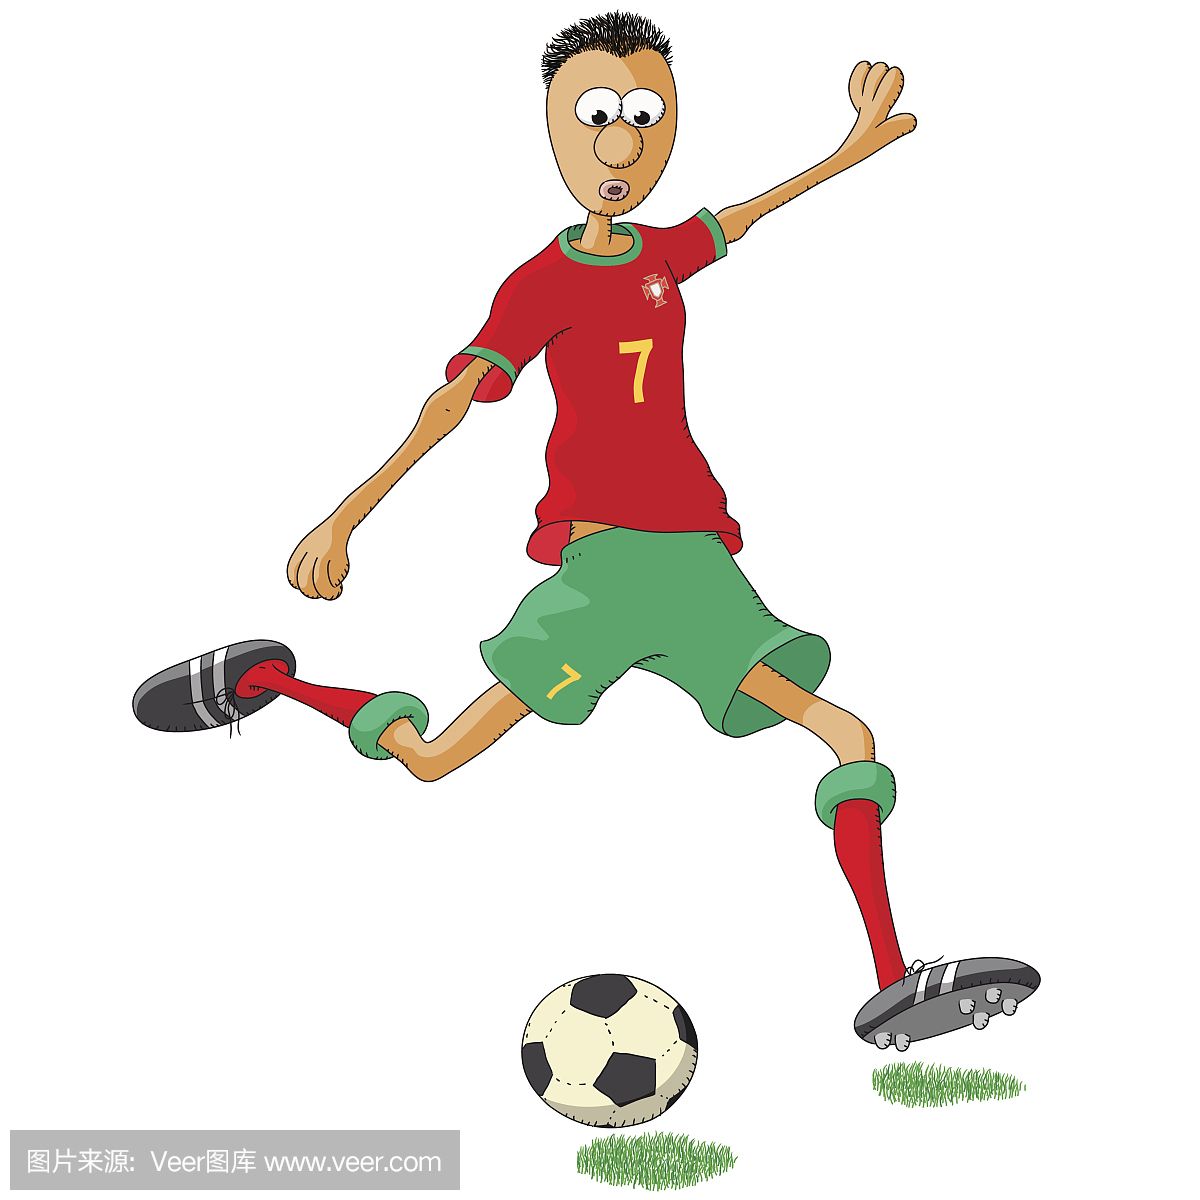 足球运动员与红色衬衫和绿色短裤